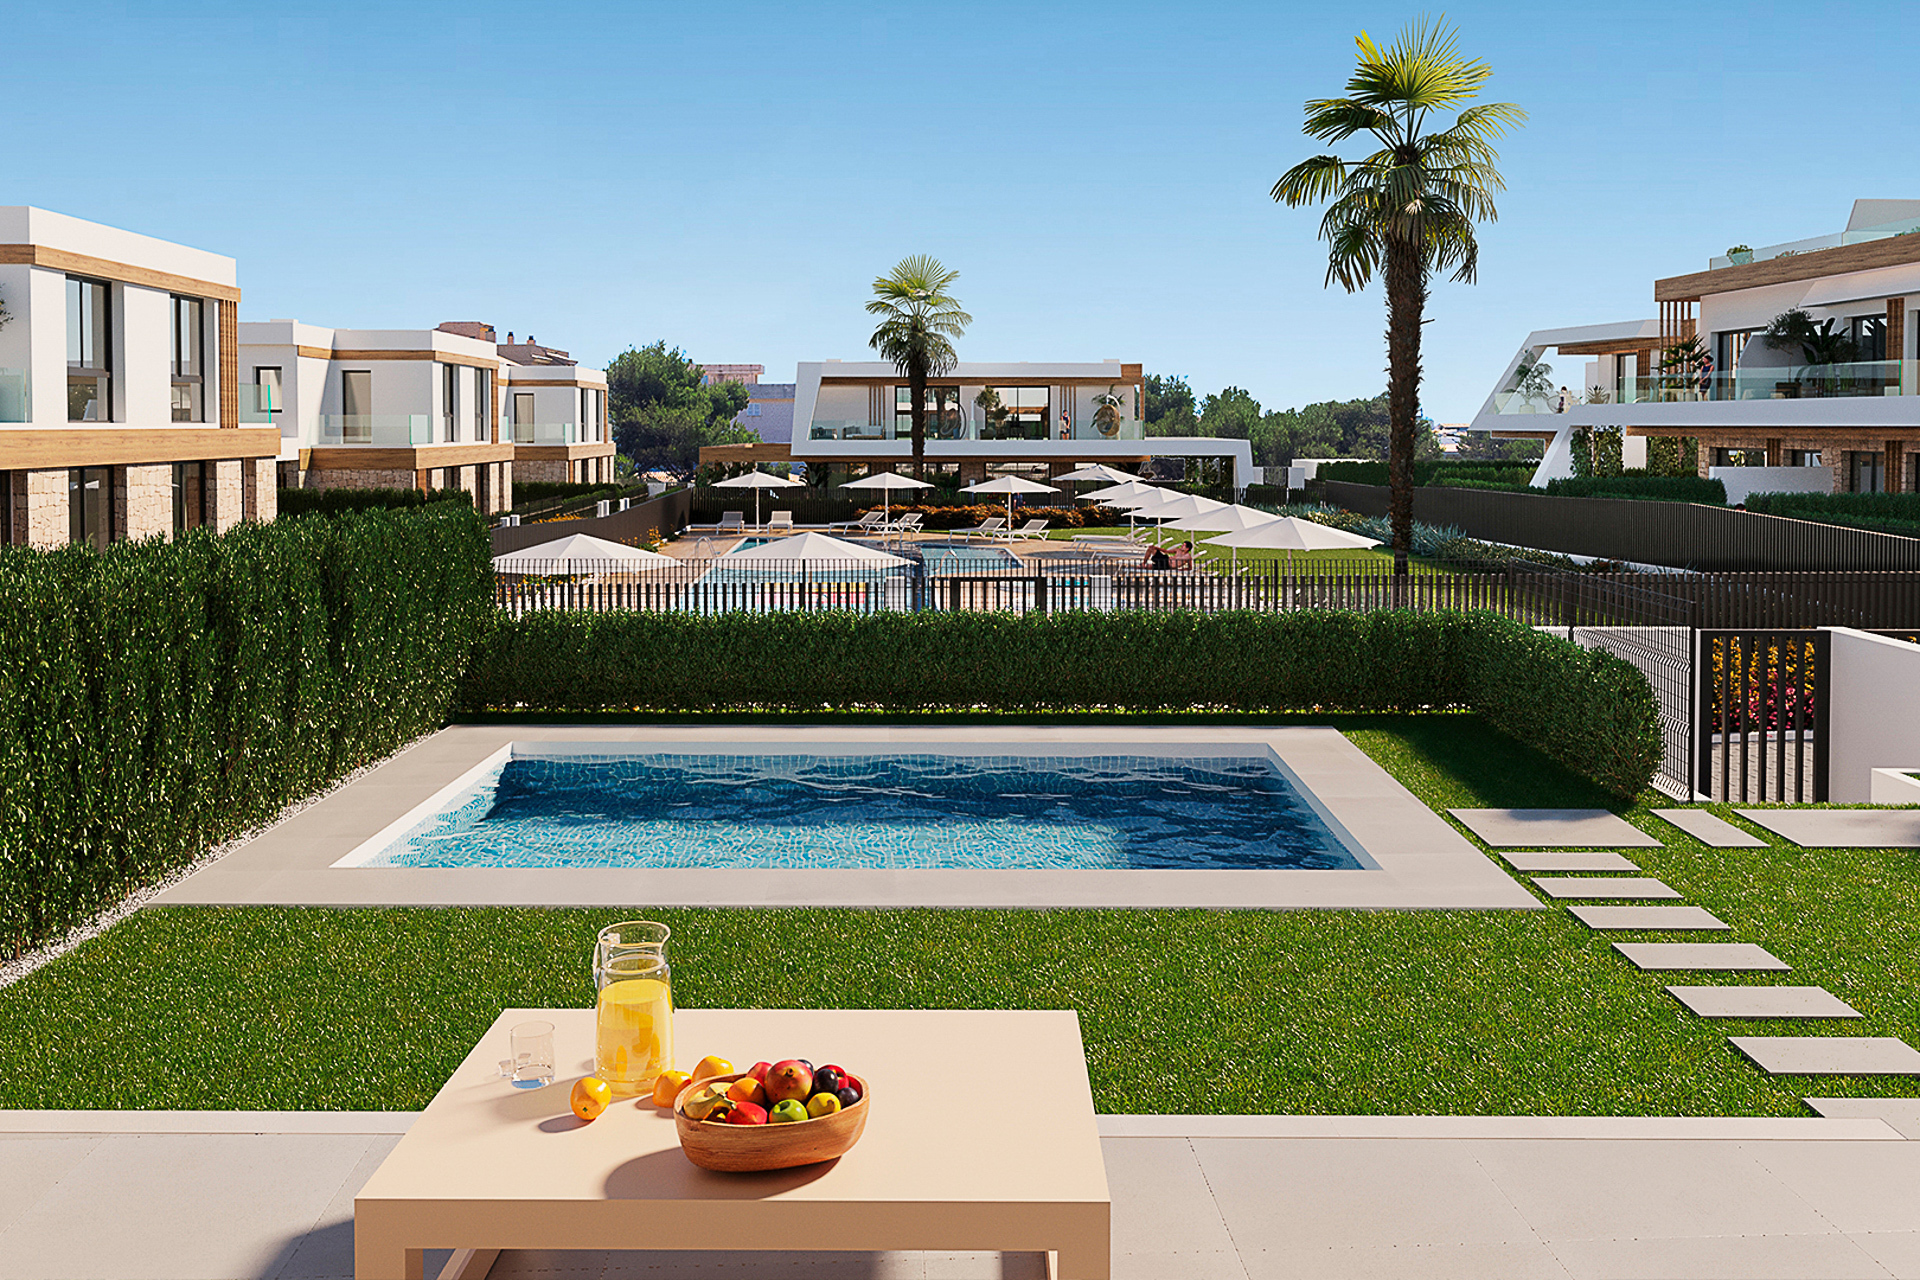 Villa a estrenar de primera calidad con 3 dormitorios, jardín privado y piscina comunitaria, 07580 Cala Ratjada (España), Chalet